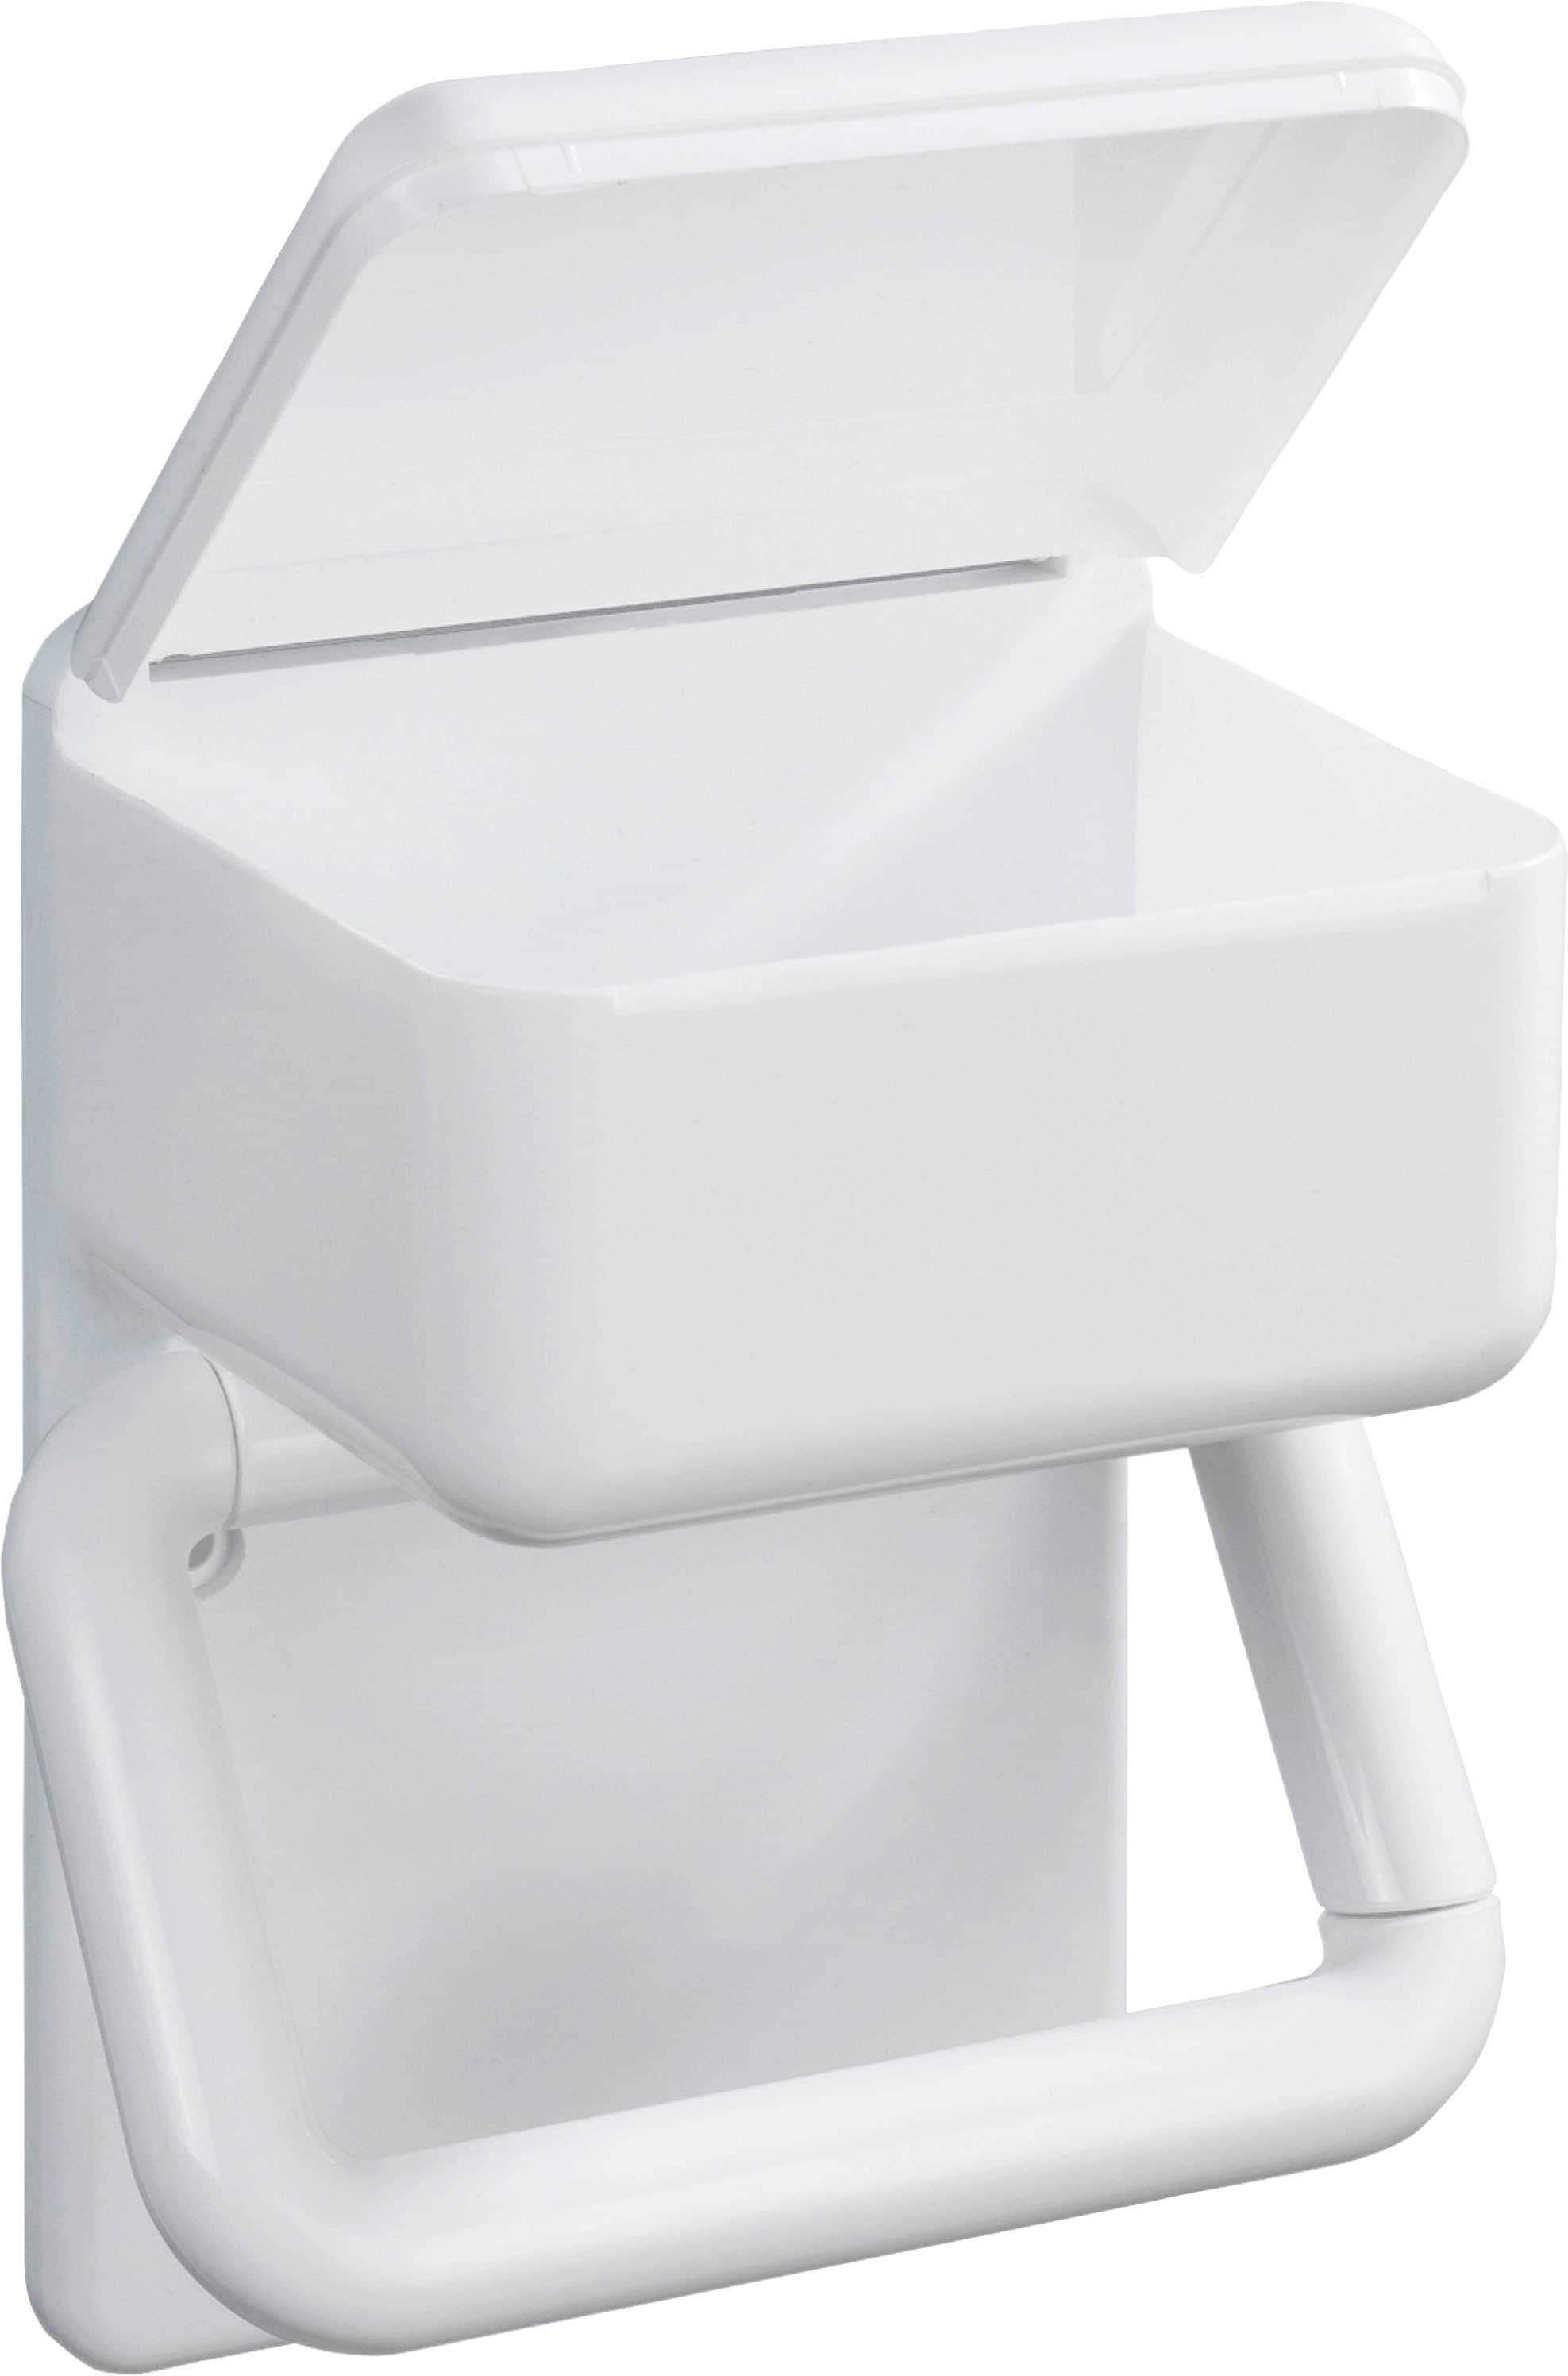 Maximex Toilettenpapierhalter »2 in 1«, mit Ablage für feuchte Toilettentücher